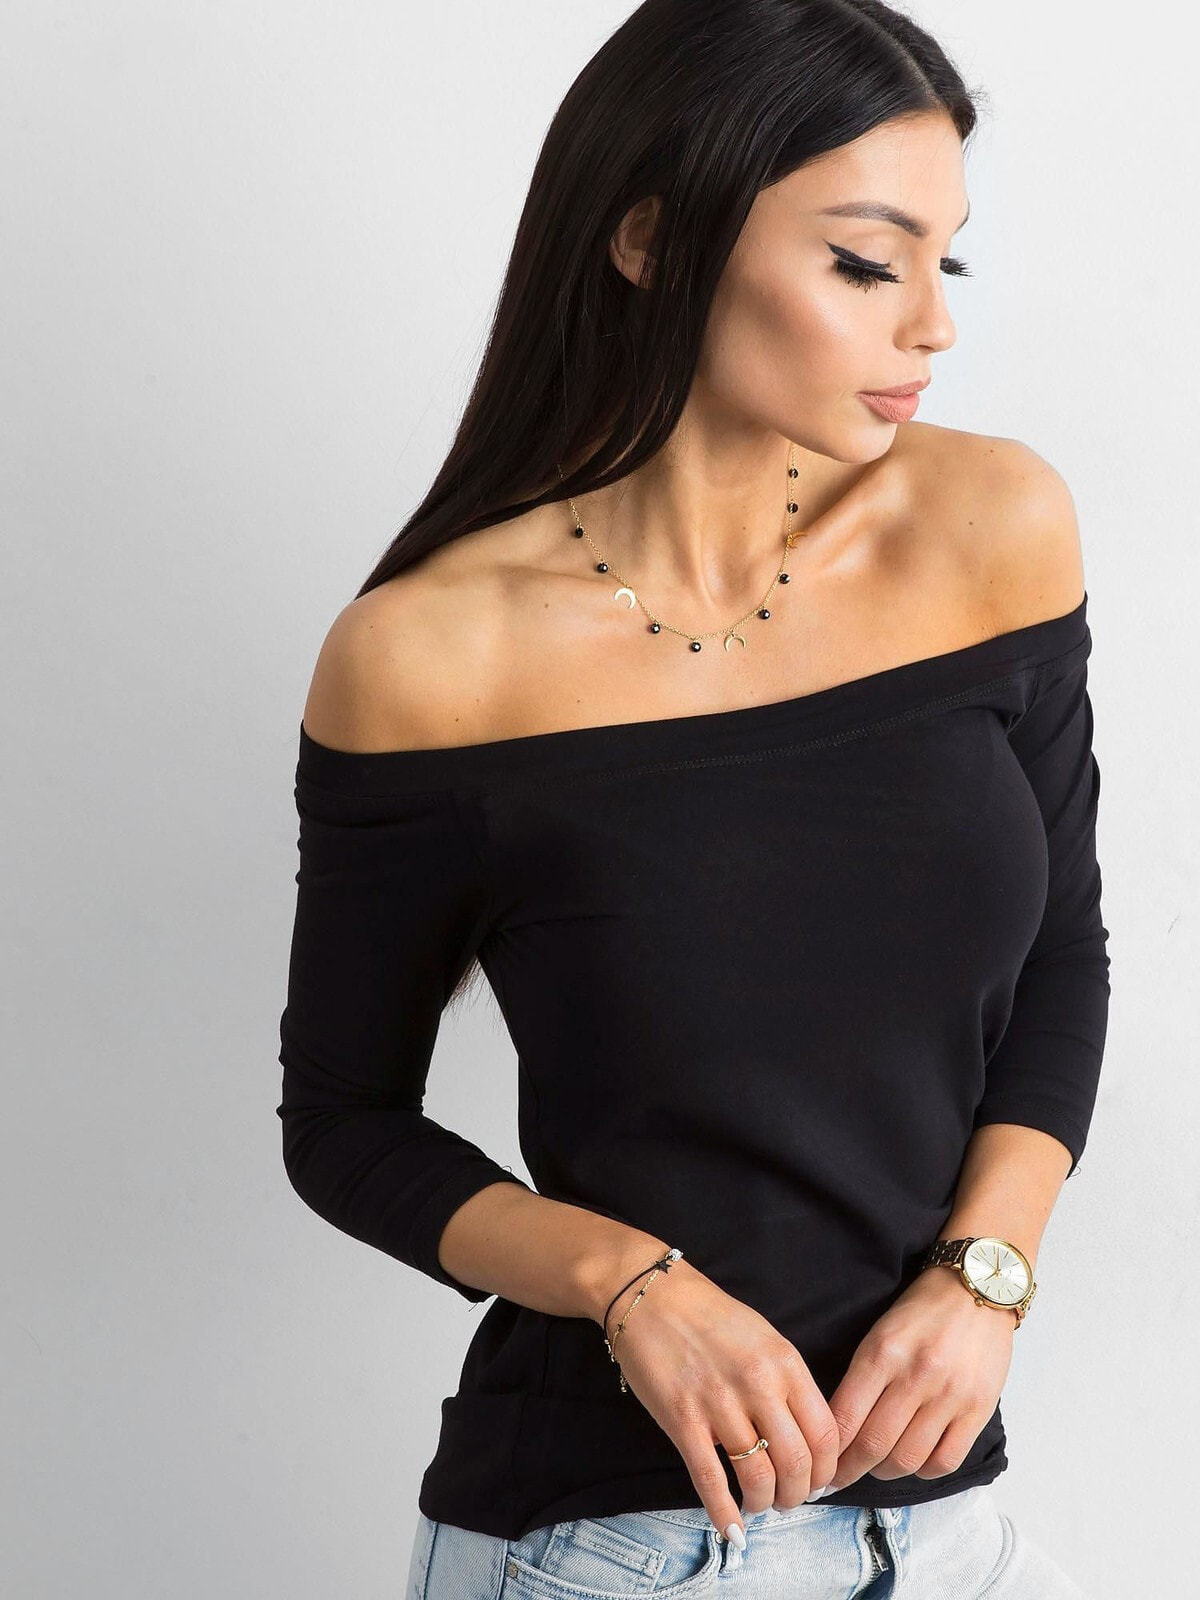 Женская блузка с удлиненным рукавом и открытыми плечами черная Factory Price